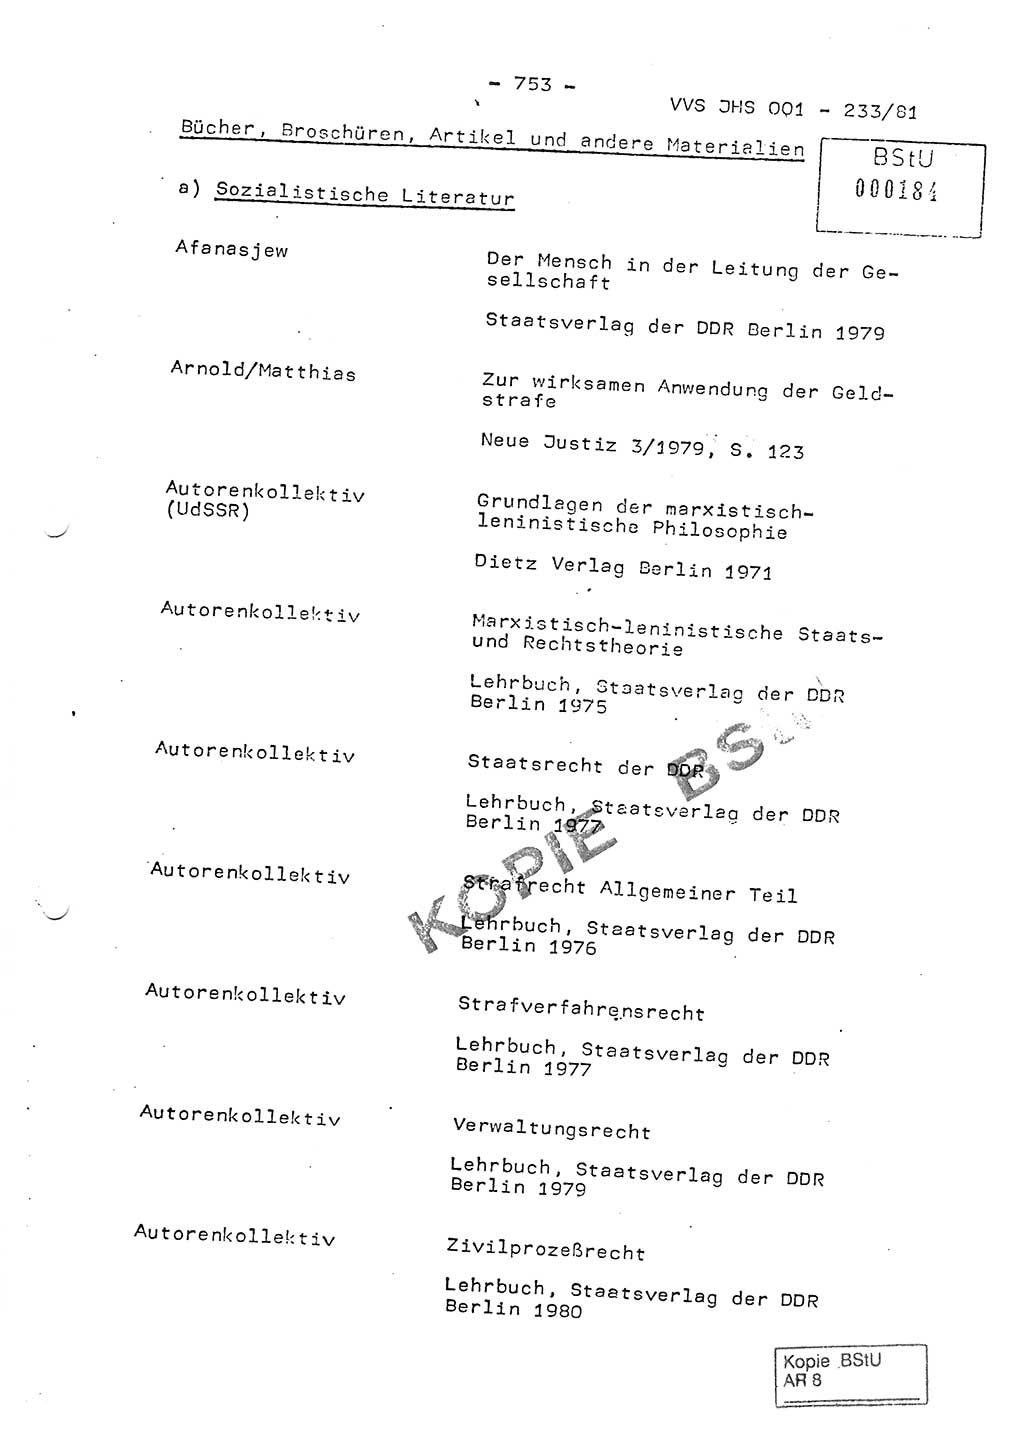 Dissertation Oberstleutnant Horst Zank (JHS), Oberstleutnant Dr. Karl-Heinz Knoblauch (JHS), Oberstleutnant Gustav-Adolf Kowalewski (HA Ⅸ), Oberstleutnant Wolfgang Plötner (HA Ⅸ), Ministerium für Staatssicherheit (MfS) [Deutsche Demokratische Republik (DDR)], Juristische Hochschule (JHS), Vertrauliche Verschlußsache (VVS) o001-233/81, Potsdam 1981, Blatt 753 (Diss. MfS DDR JHS VVS o001-233/81 1981, Bl. 753)